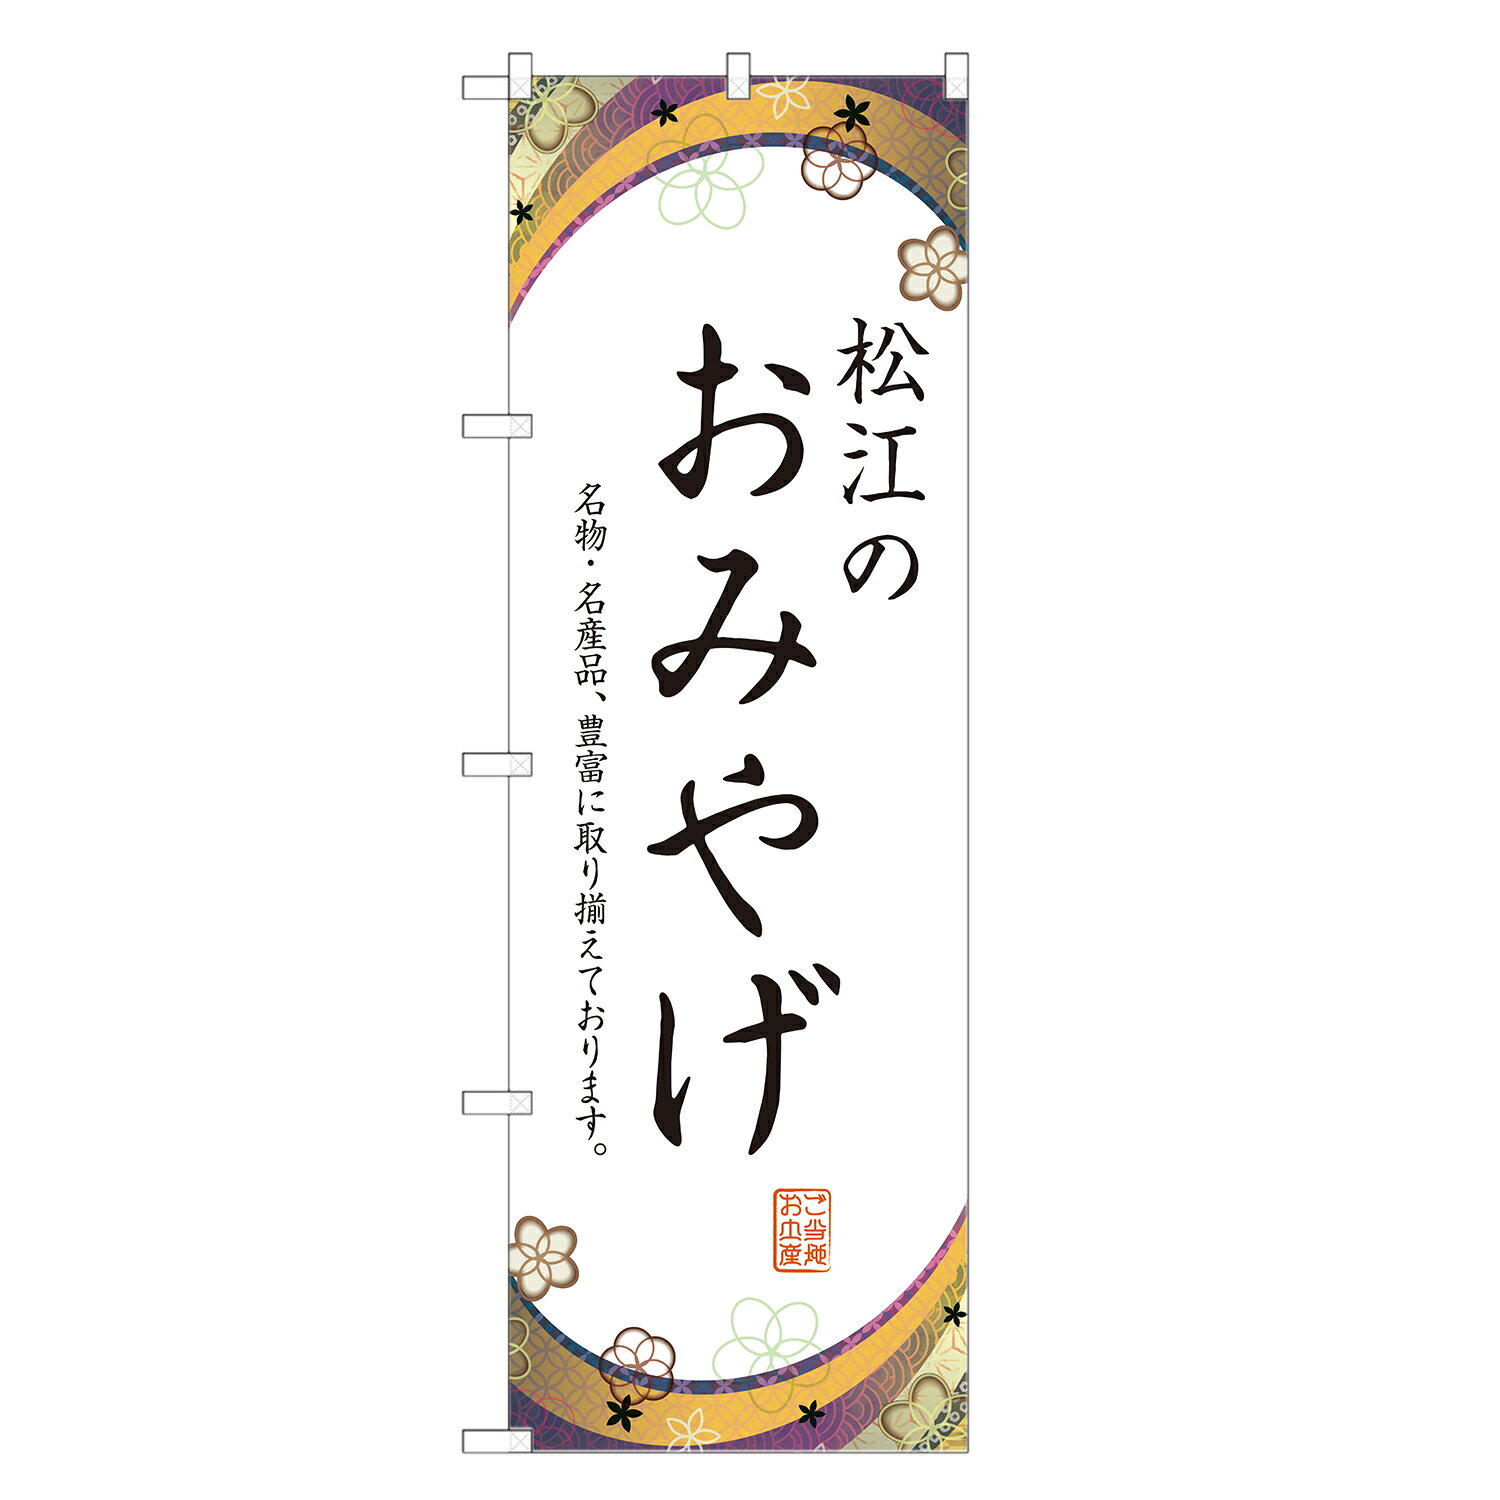 のぼり旗 松江のお土産 のぼり 四方三巻縫製 T09-0937A-R